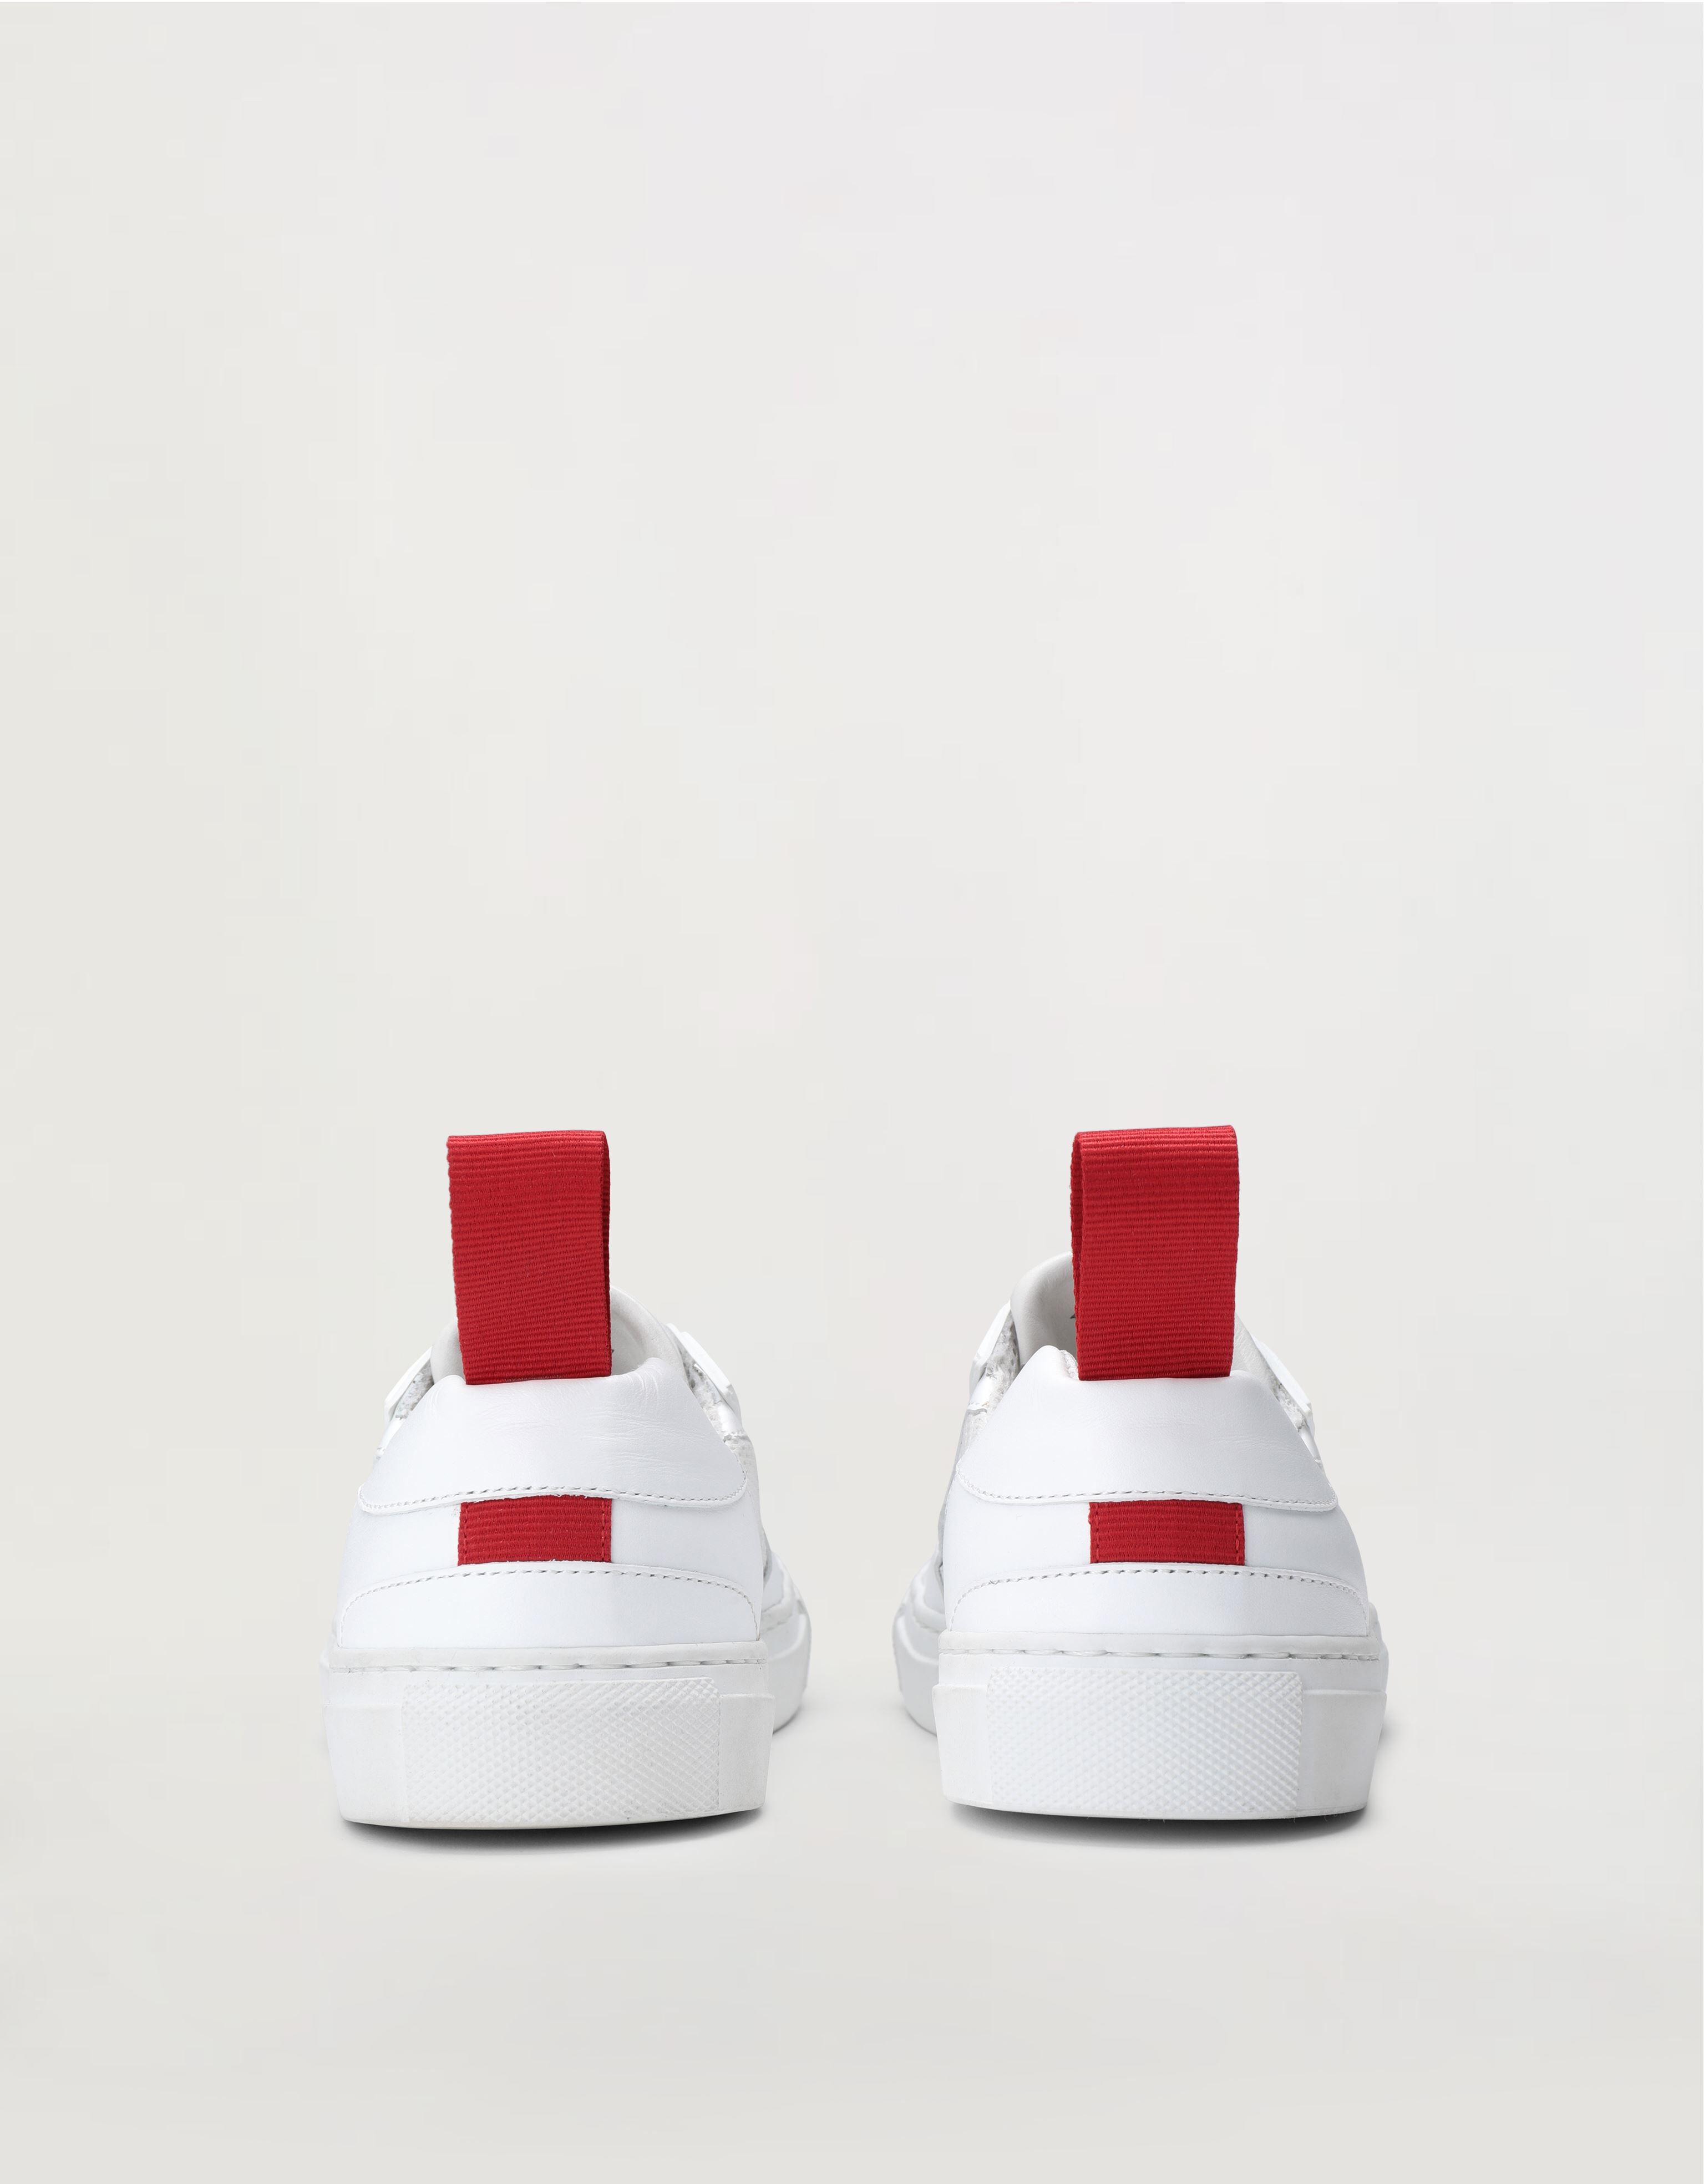 Ferrari Slip-on-Sneakers für Damen aus Leder mit „Cavallino Rampante“-Emblem Optisch Weiß 47104f